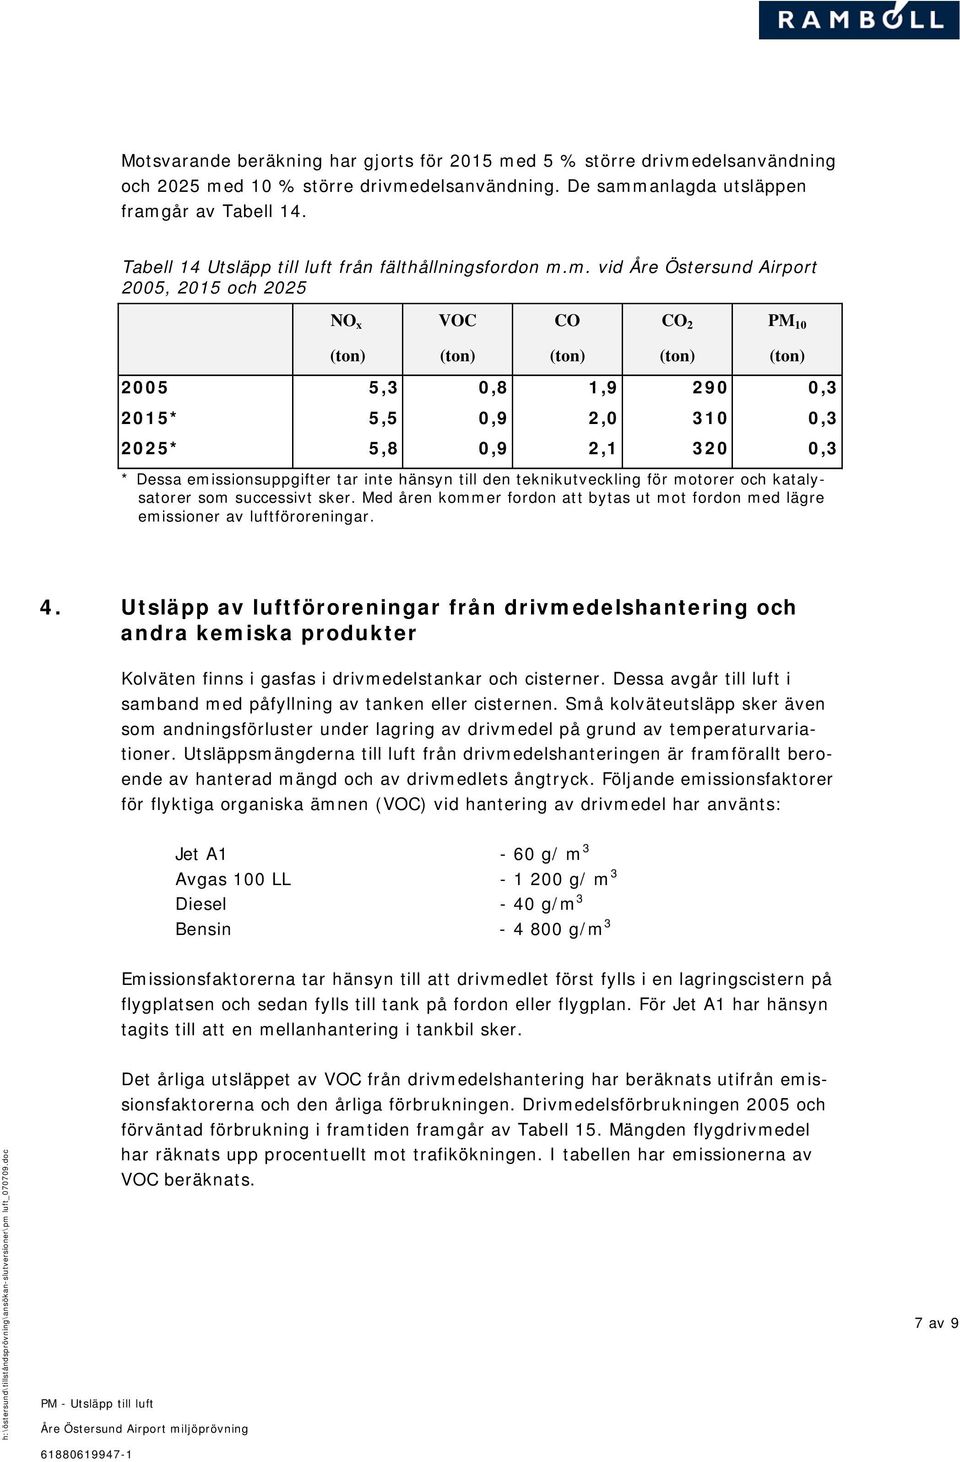 m. vid Åre Östersund Airport 2005, 2015 och 2025 NO x VOC CO CO 2 PM 10 2005 5,3 0,8 1,9 290 0,3 2015* 5,5 0,9 2,0 310 0,3 2025* 5,8 0,9 2,1 320 0,3 * Dessa emissionsuppgifter tar inte hänsyn till